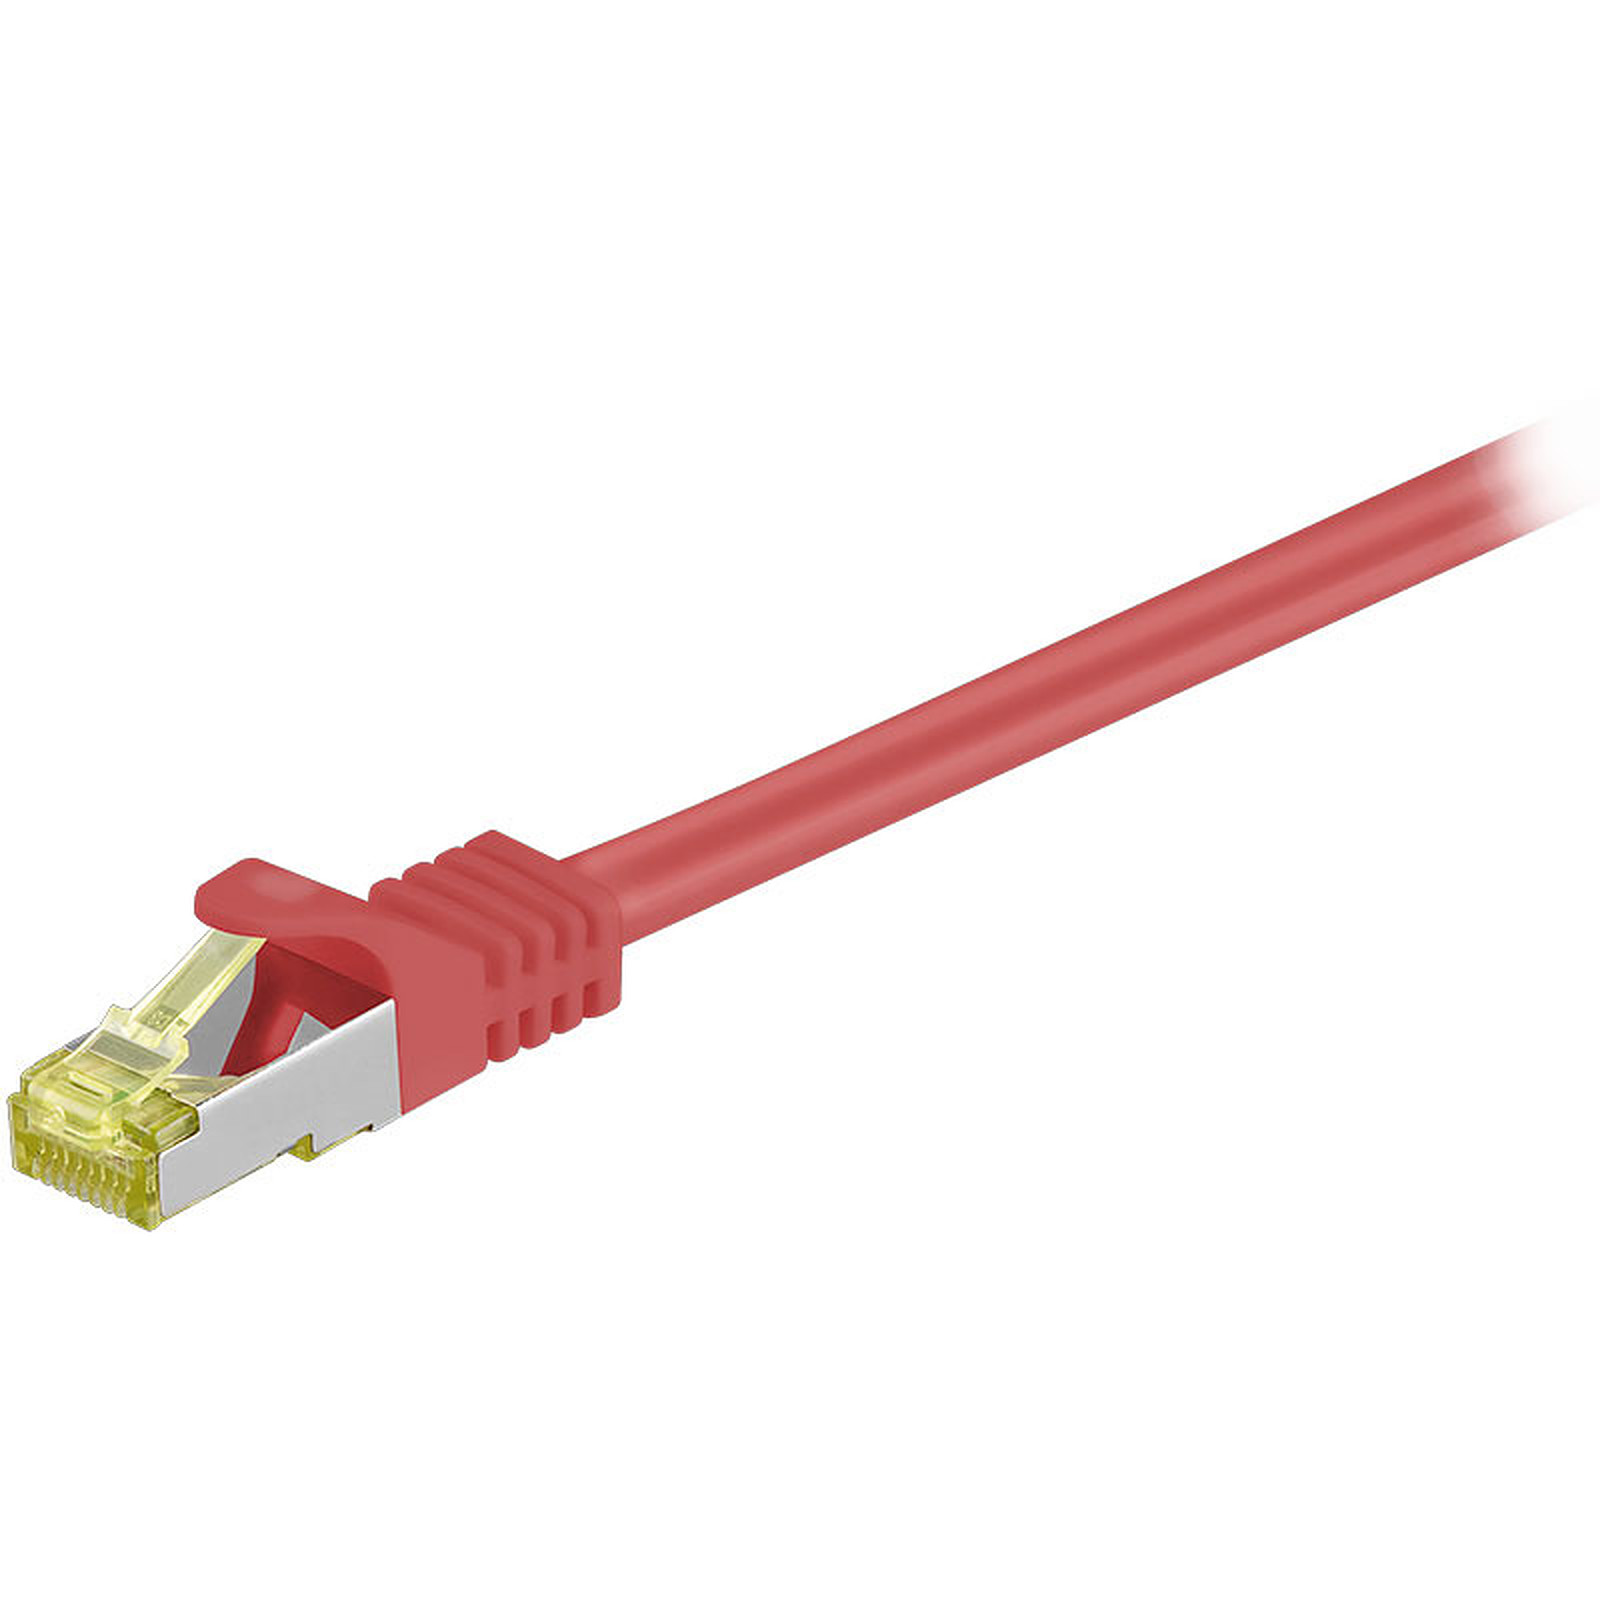 Cordon RJ45 categorie 7 S/FTP 2 m (Rouge) - Cable RJ45 Generique